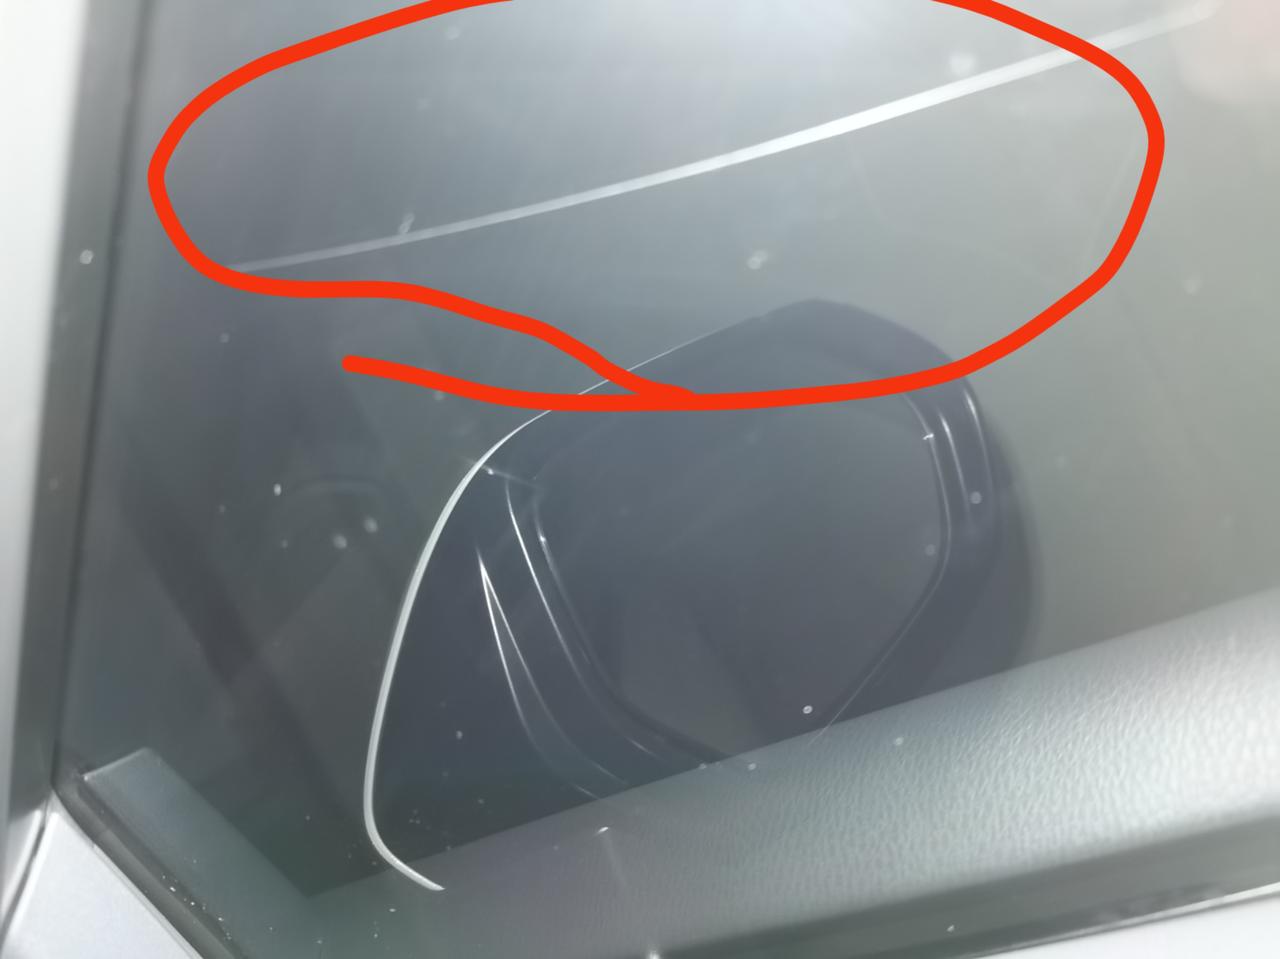 丰田凯美瑞 是是玻璃膜裂了还是玻璃裂了？21年12月30日提车，22年1月22日贴遮光膜。发现副驾驶车窗内里经光